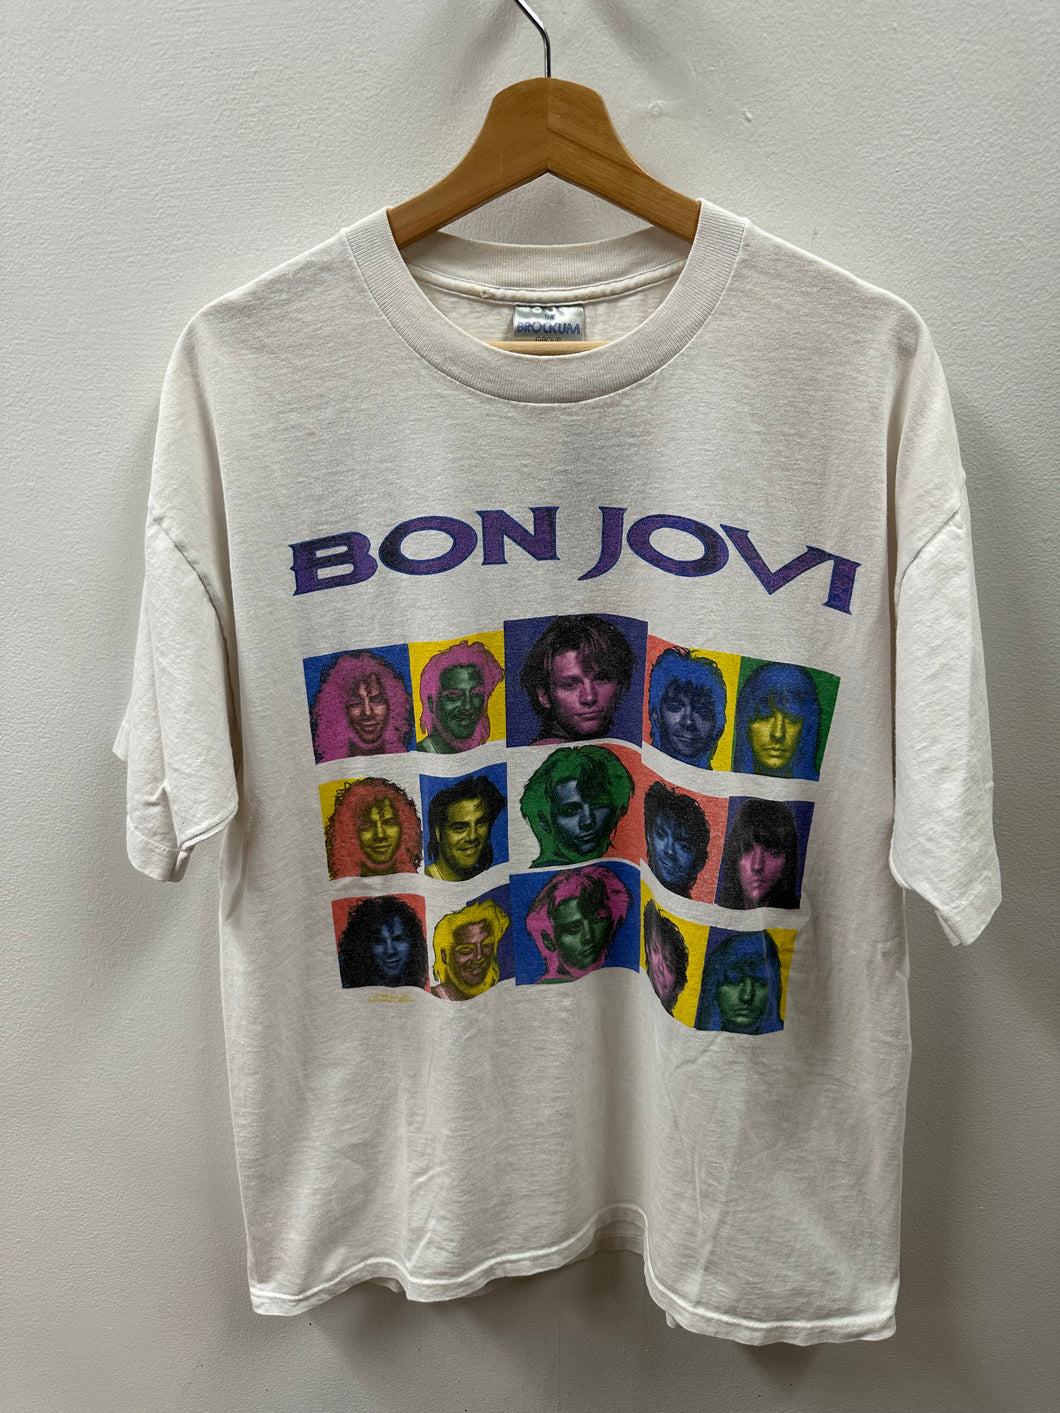 Bon Jovi Shirt